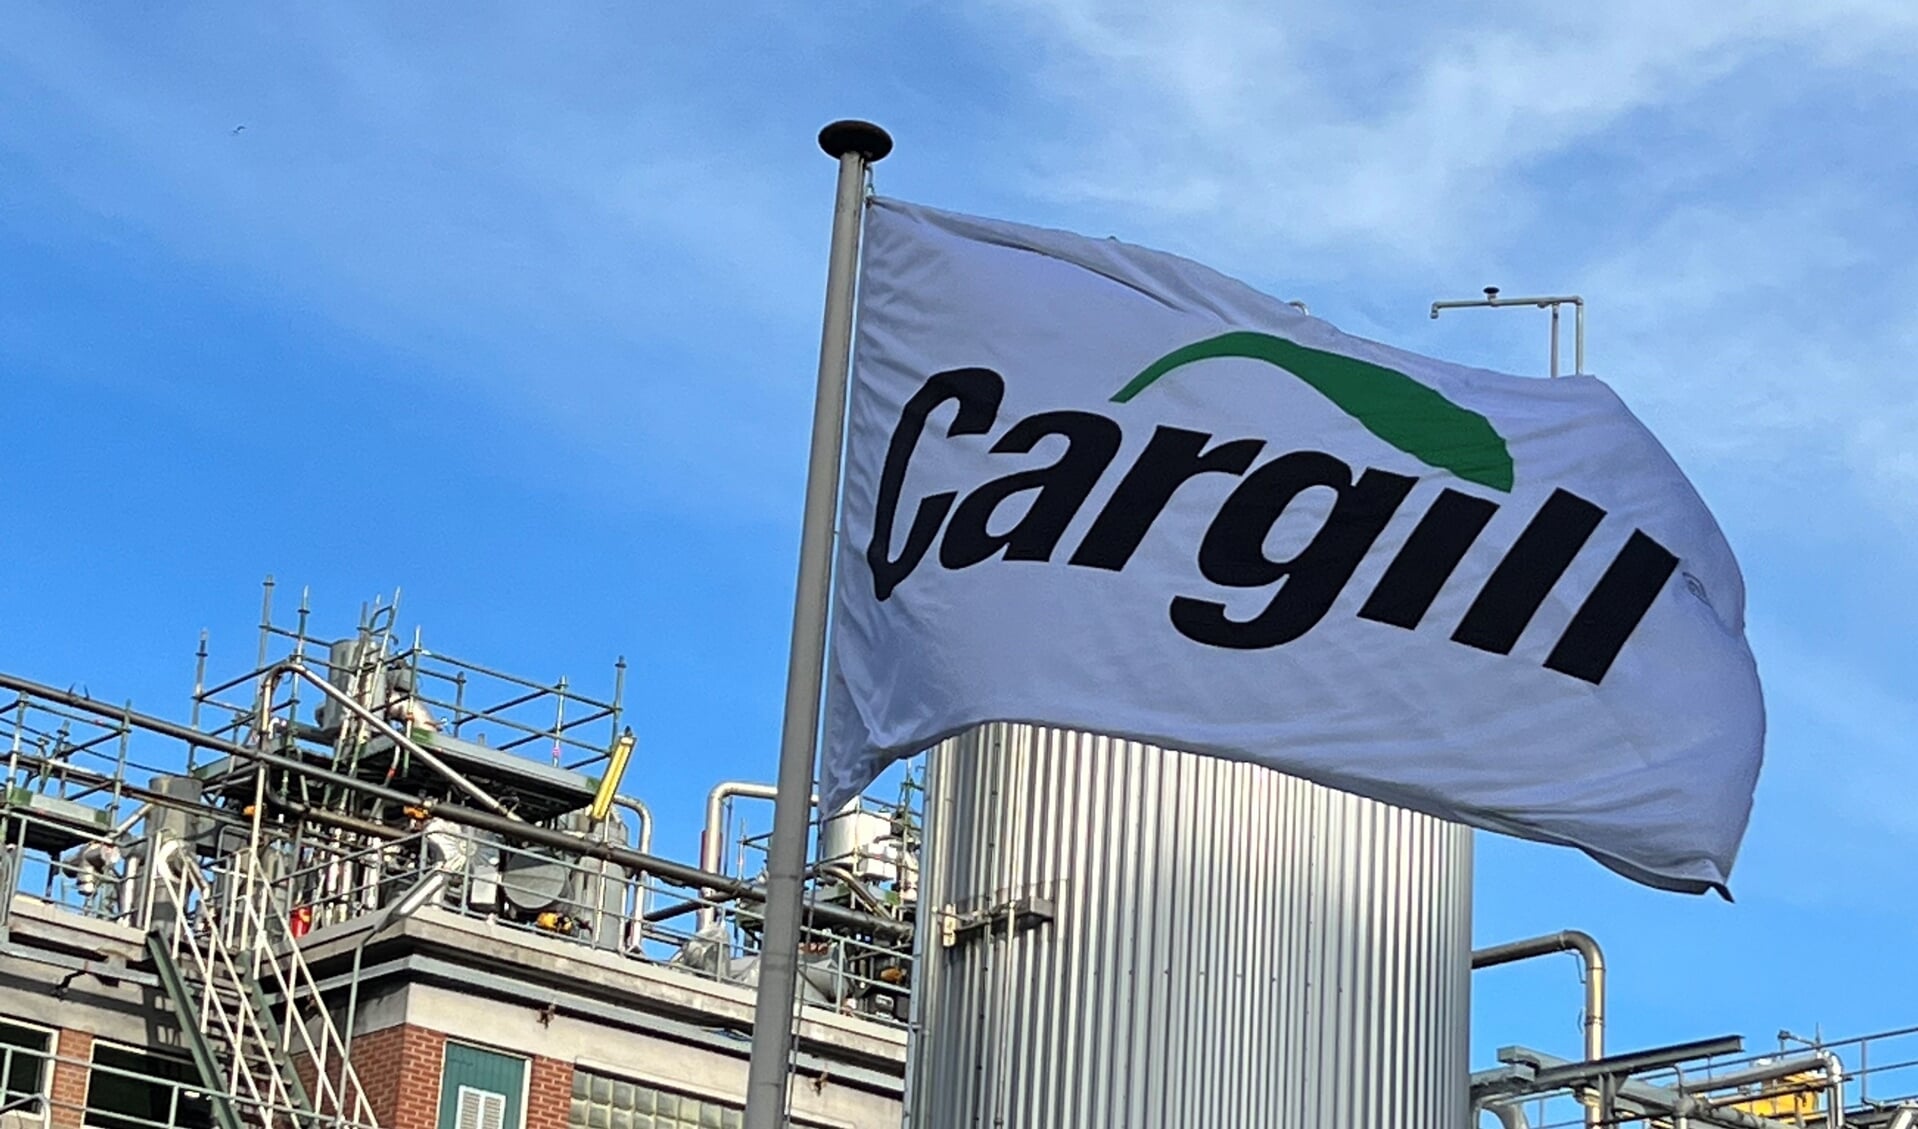 • De vlag van Cargill wappert aan het Buurtje 1 in Gouda.